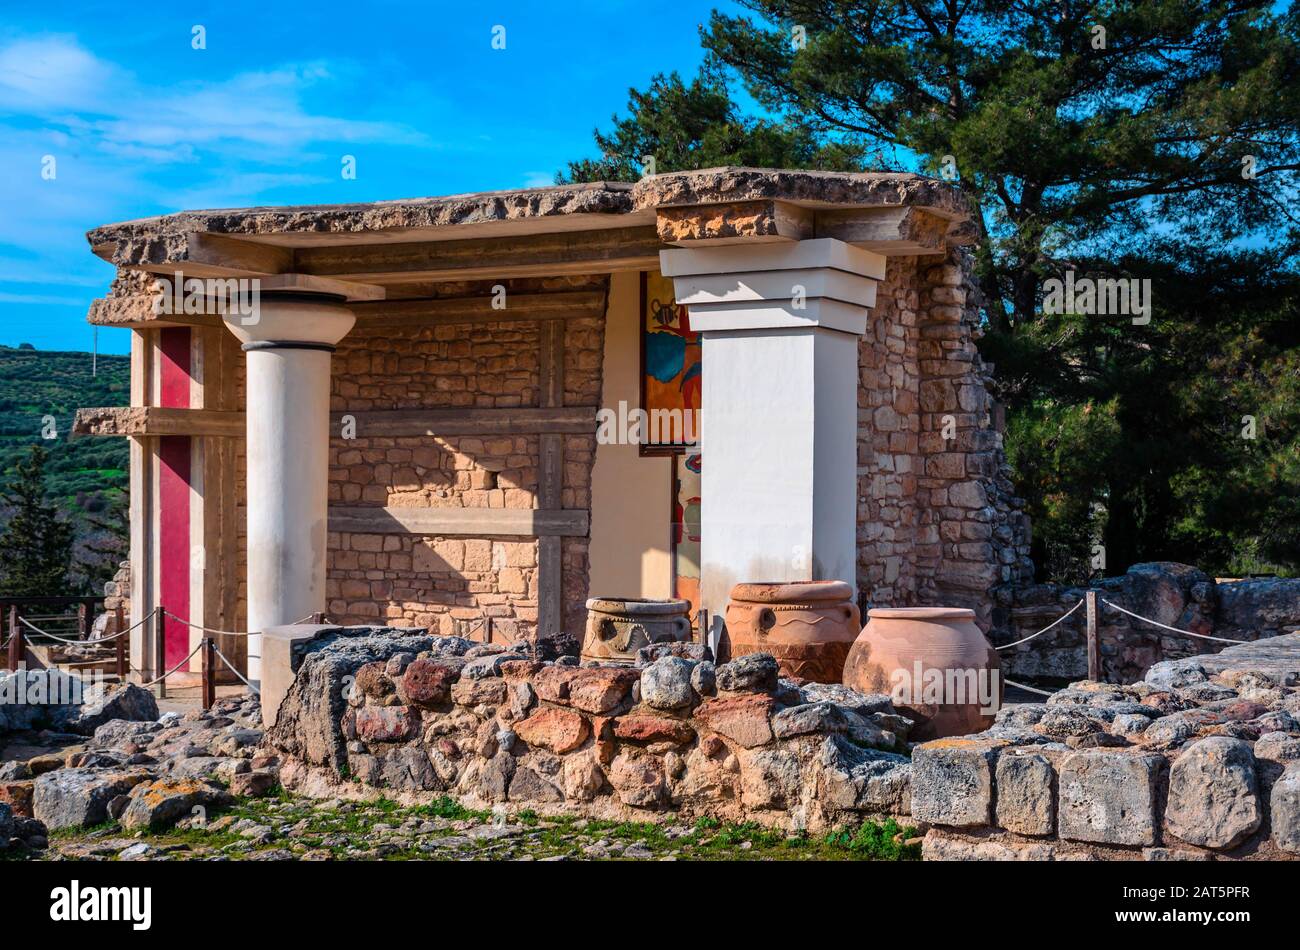 Vue sur les ruines du célèbre palais minoen de Knossos, le centre de la civilisation minoenne et l'un des plus grands sites archéologiques de Grèce. Banque D'Images